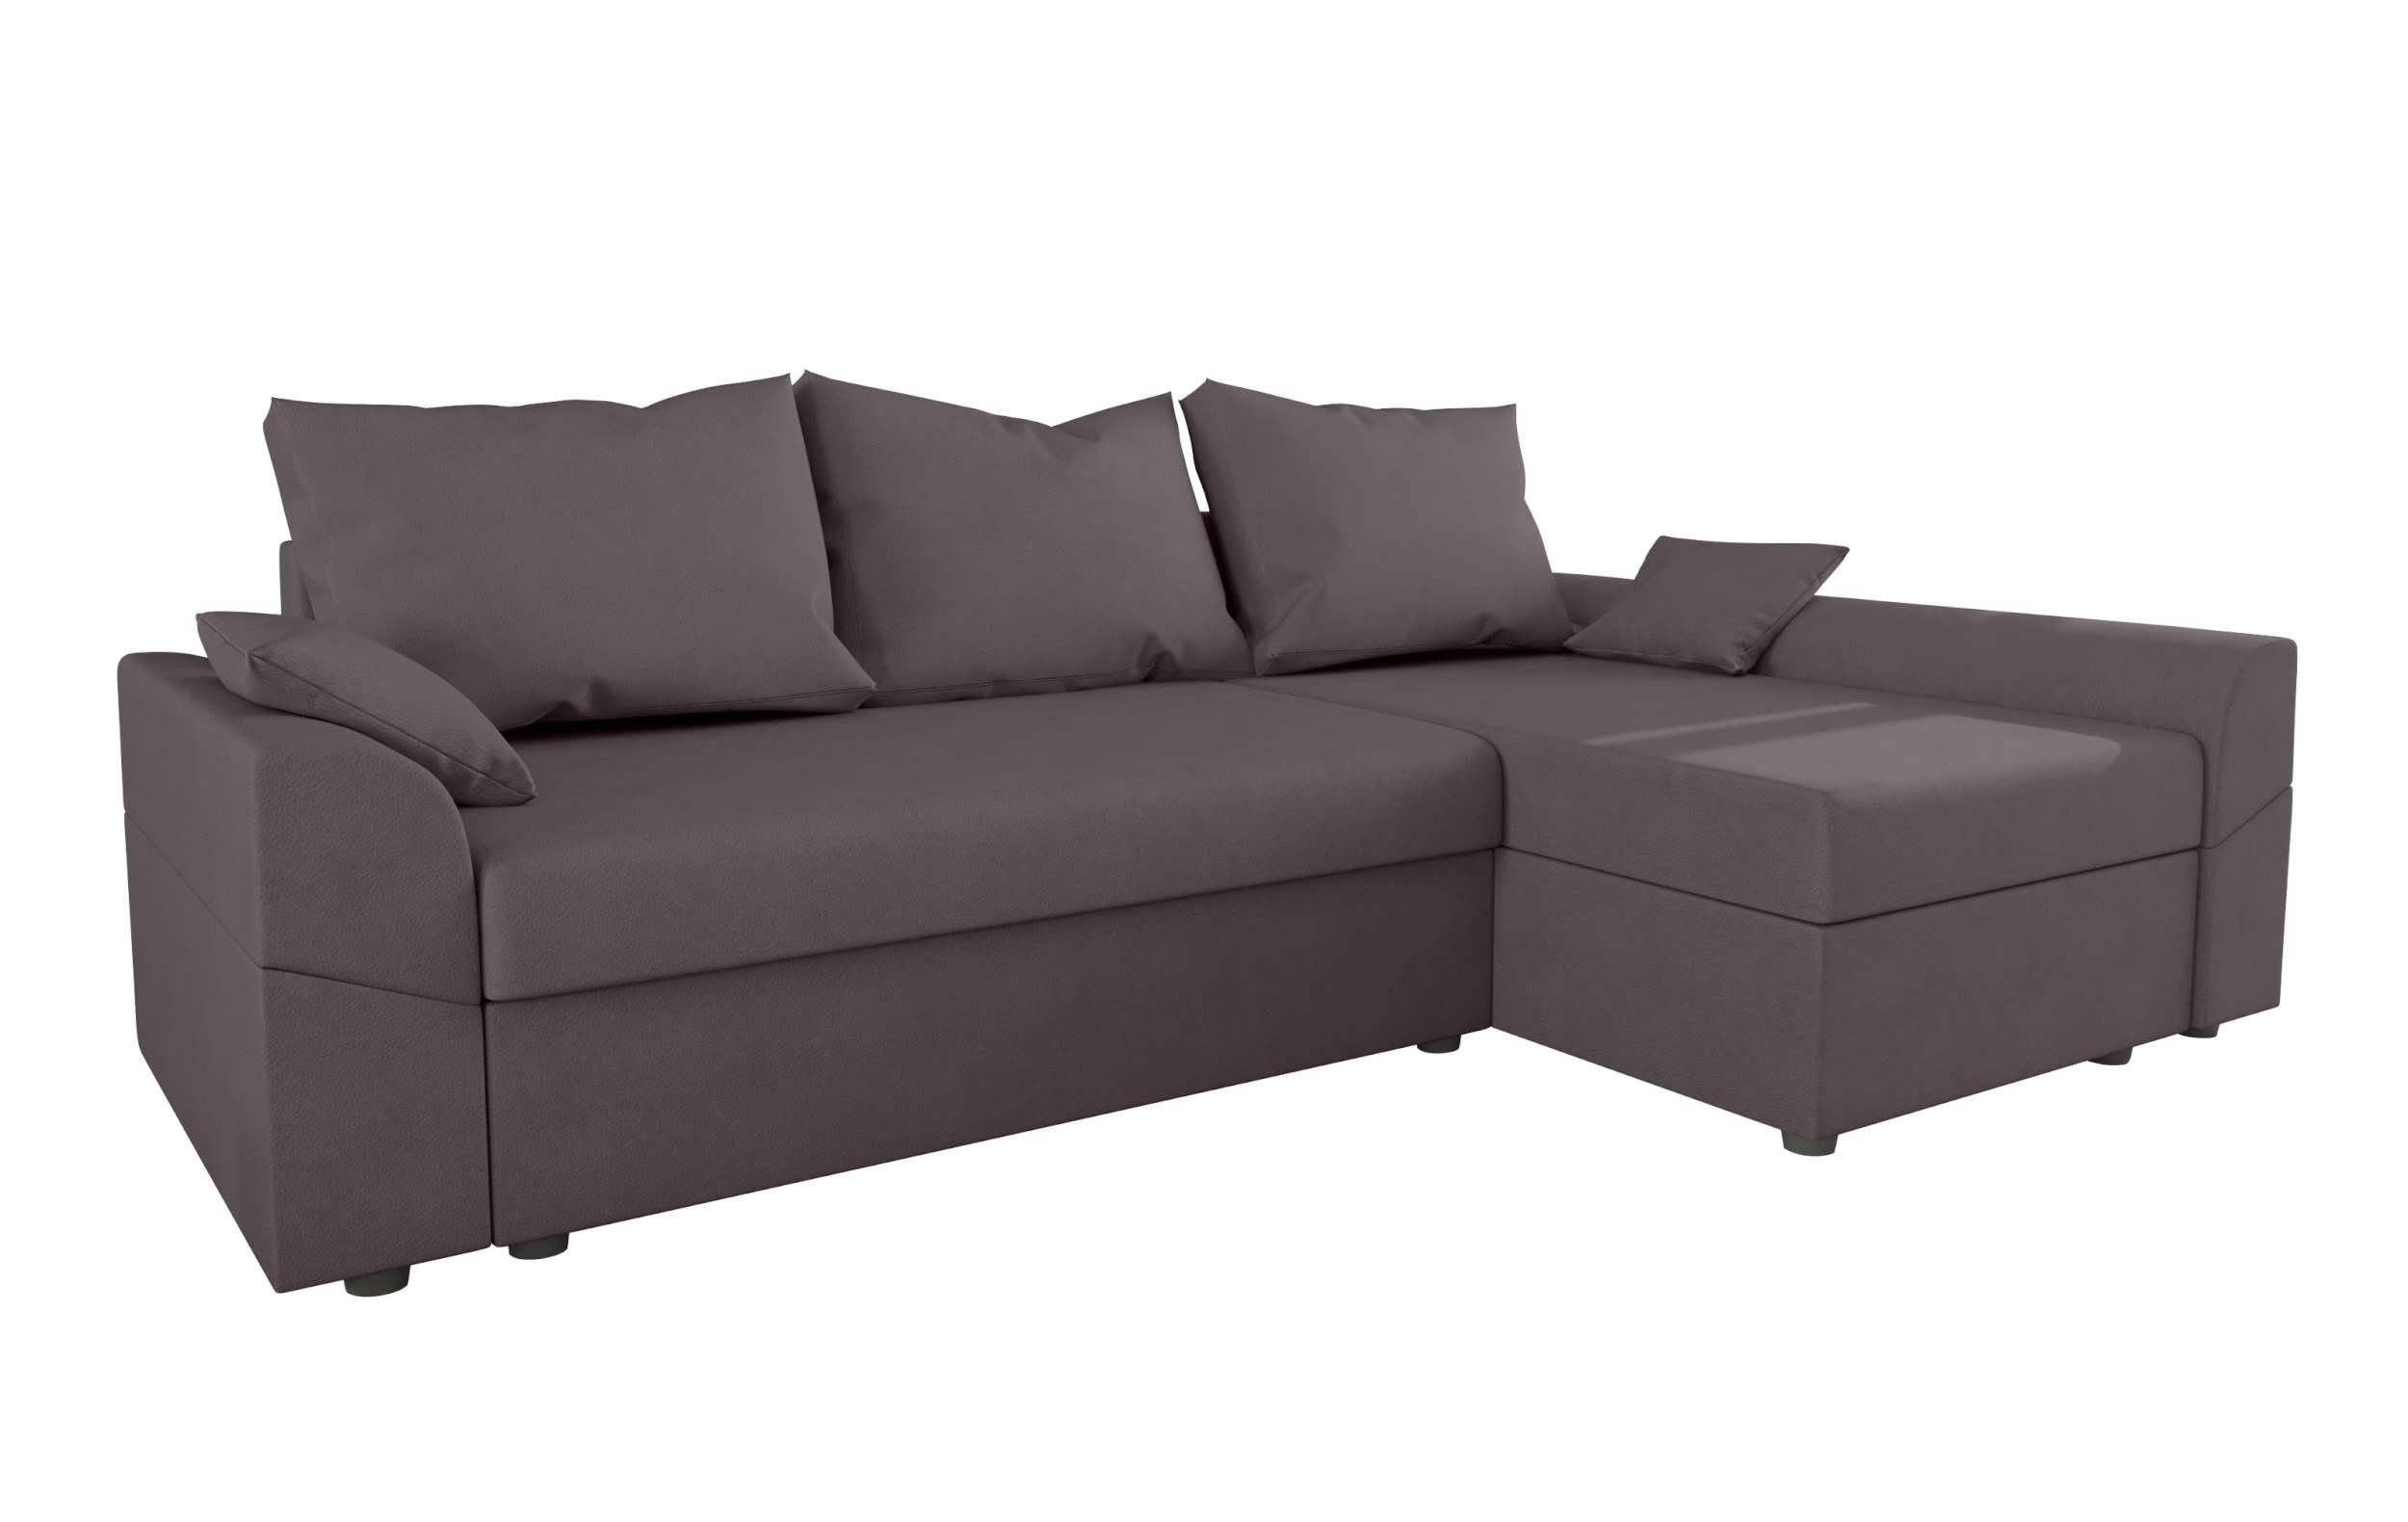 Modern Eckcouch, Bettkasten, Aurora, mit Sofa, Stylefy Bettfunktion, mit Ecksofa Sitzkomfort, Design L-Form,